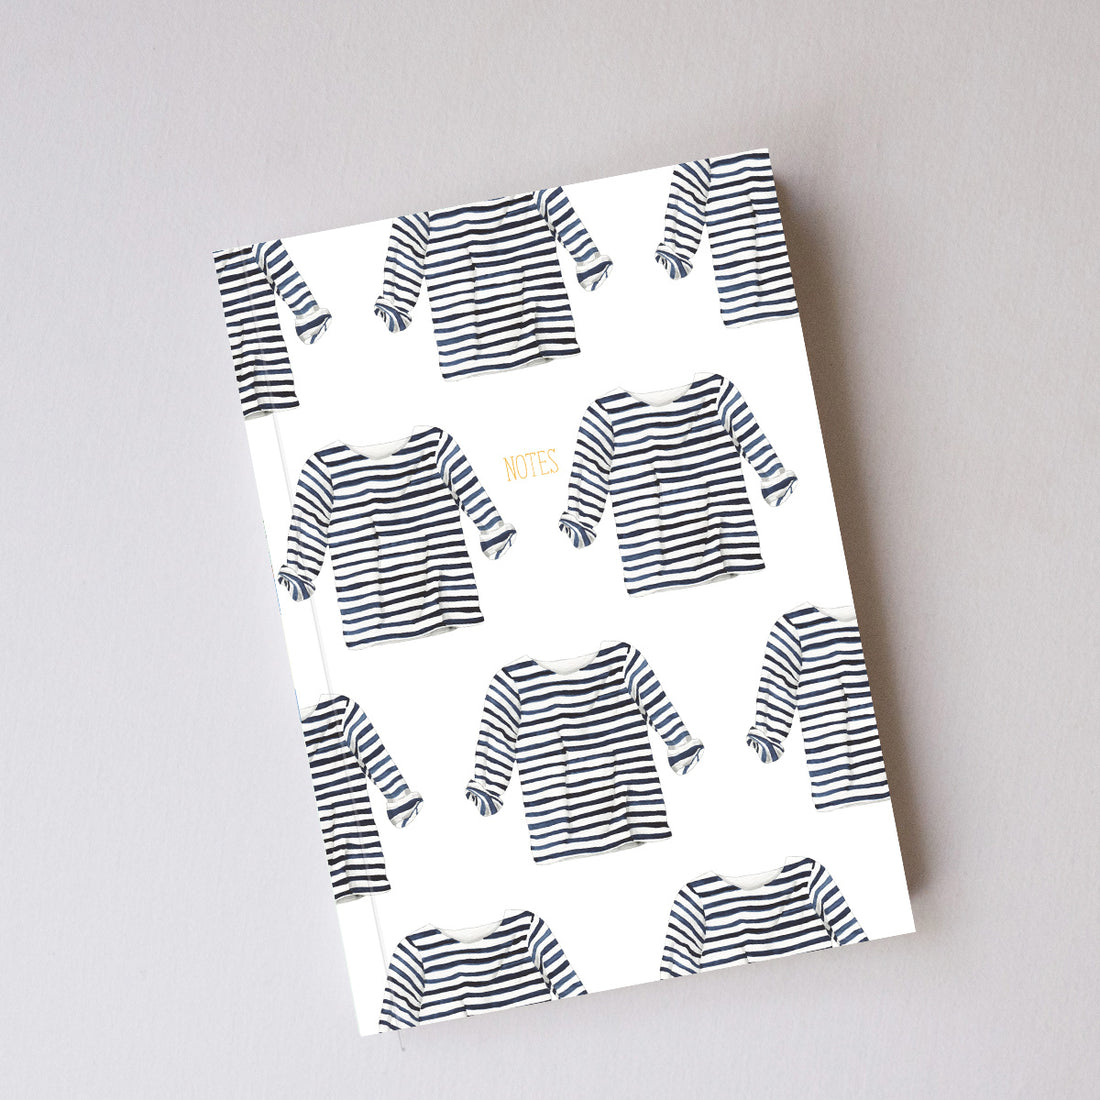 Striped Shirt Journal